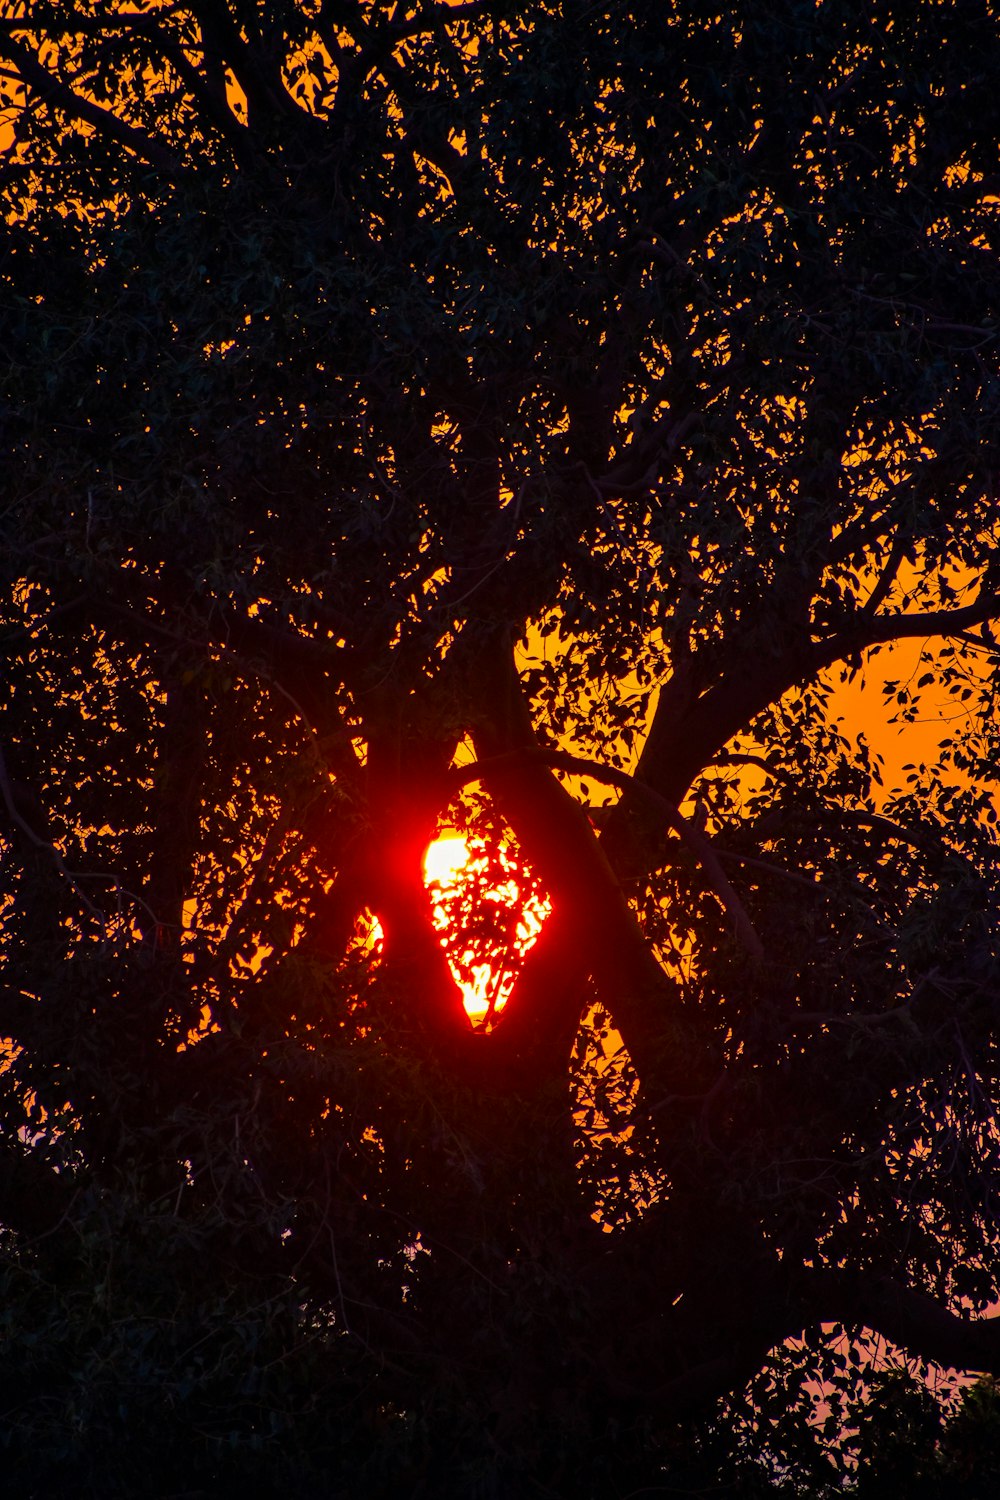 Le soleil se couche derrière un grand arbre